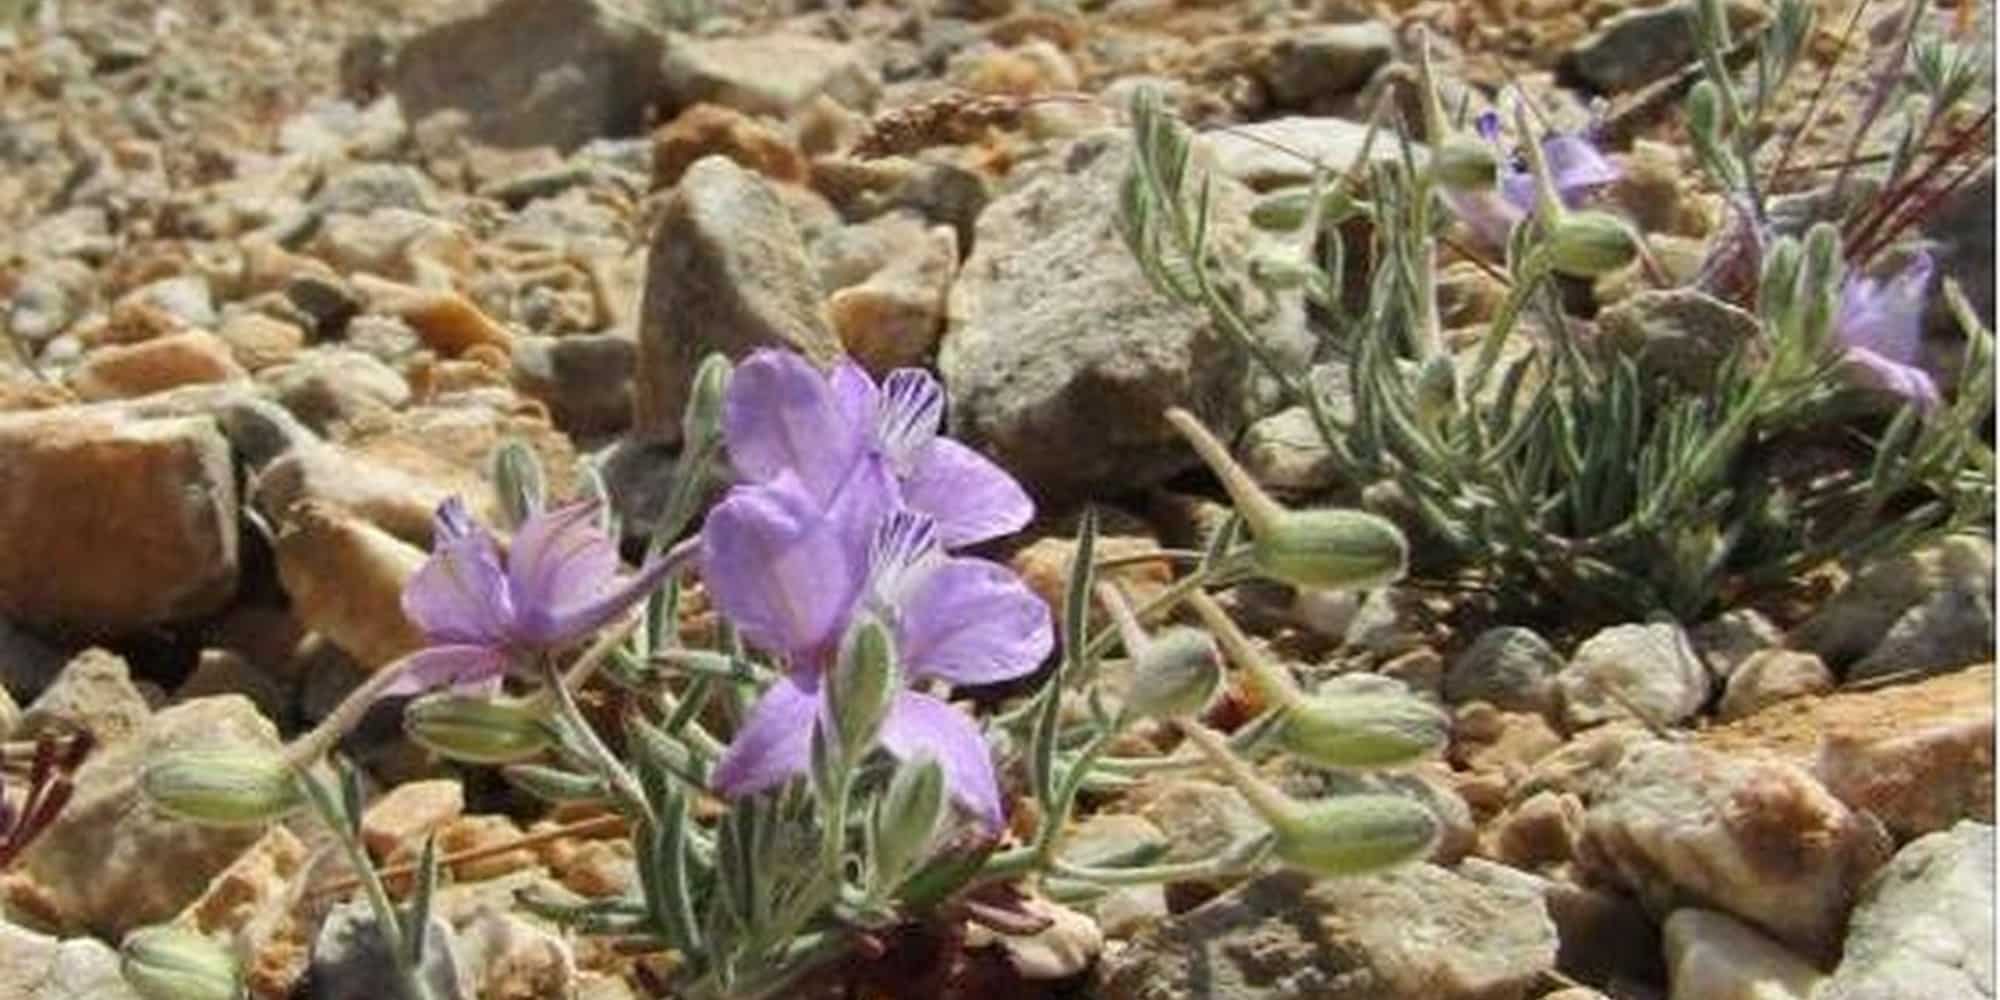 Σπάνιο φυτό βρέθηκε μετά από 61 χρόνια στη Σάμο (εικόνα)